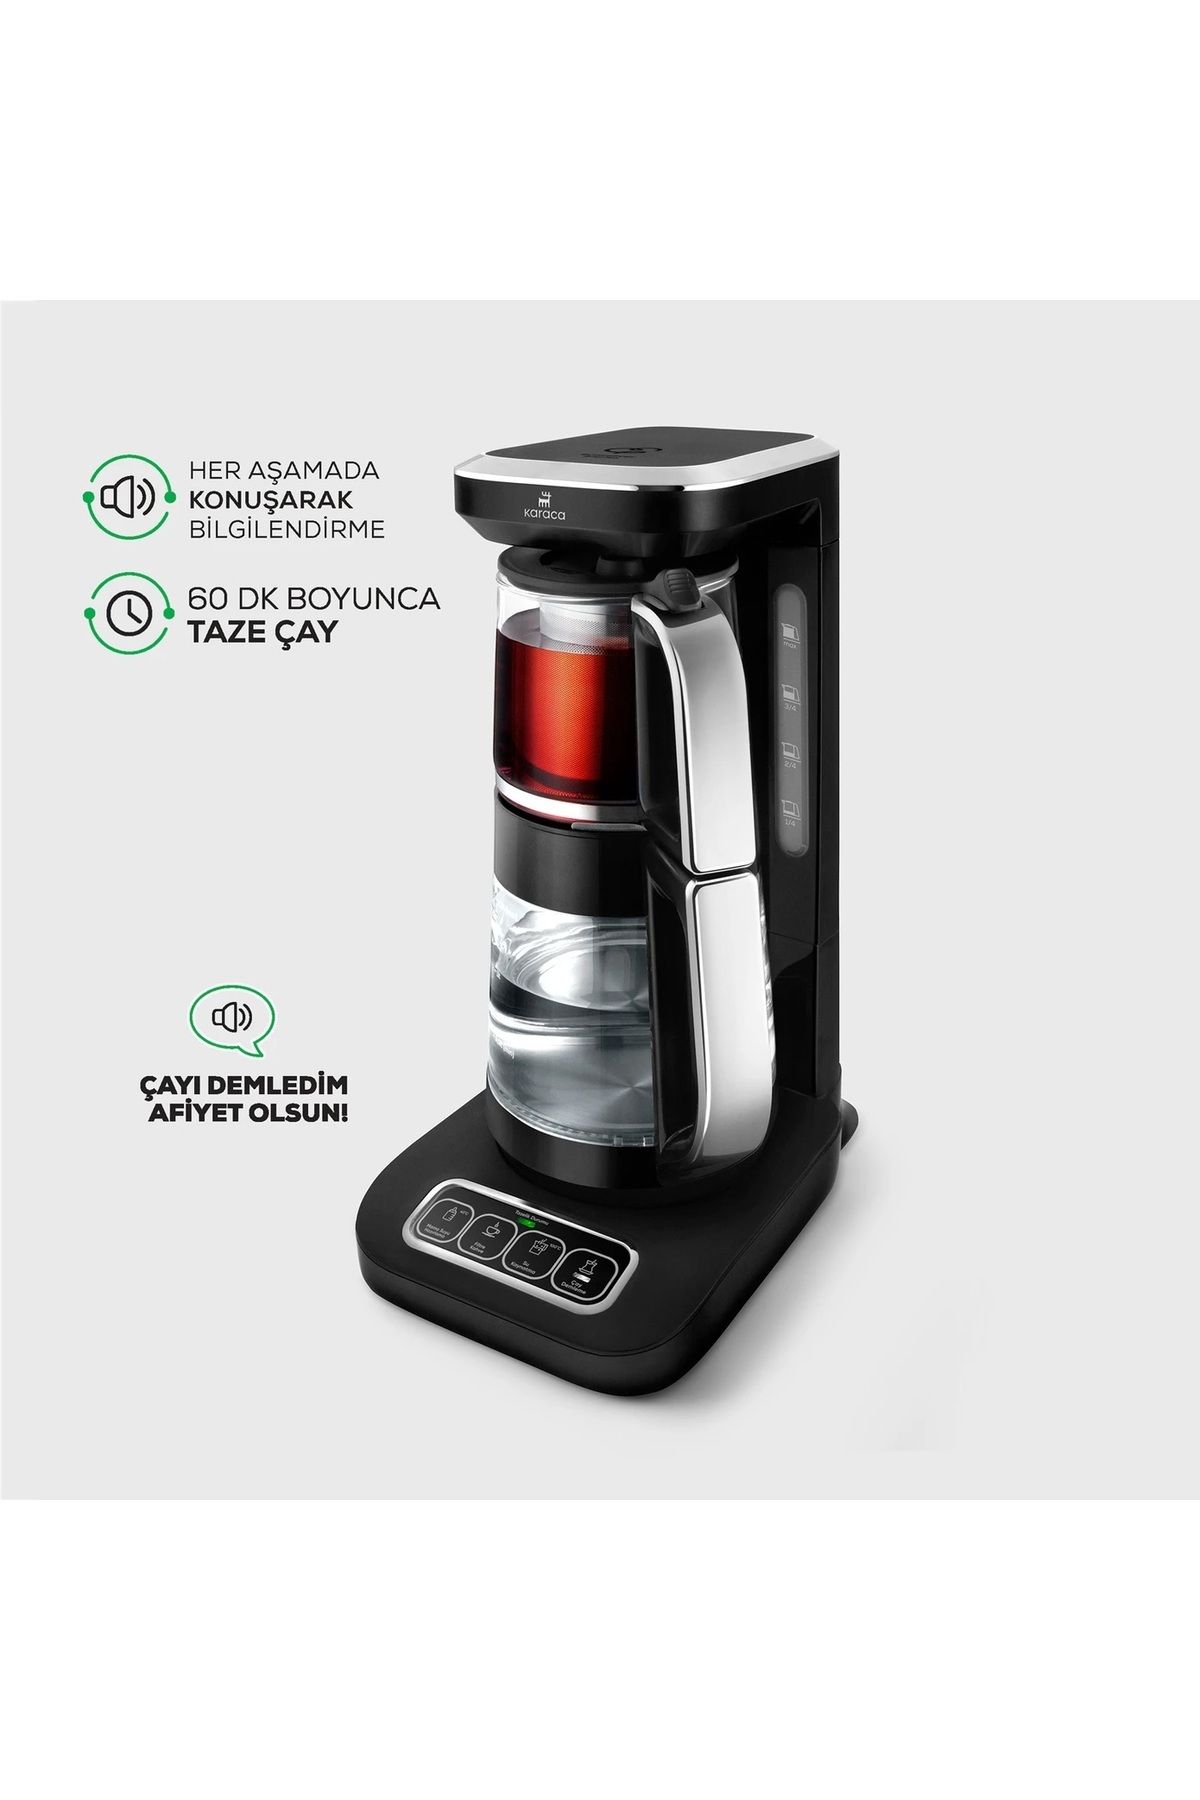 Karaca Çaysever Pro 4 in 1 Konuşan Çay Makinesi Kattle ve Filtre Kahve Makinesi